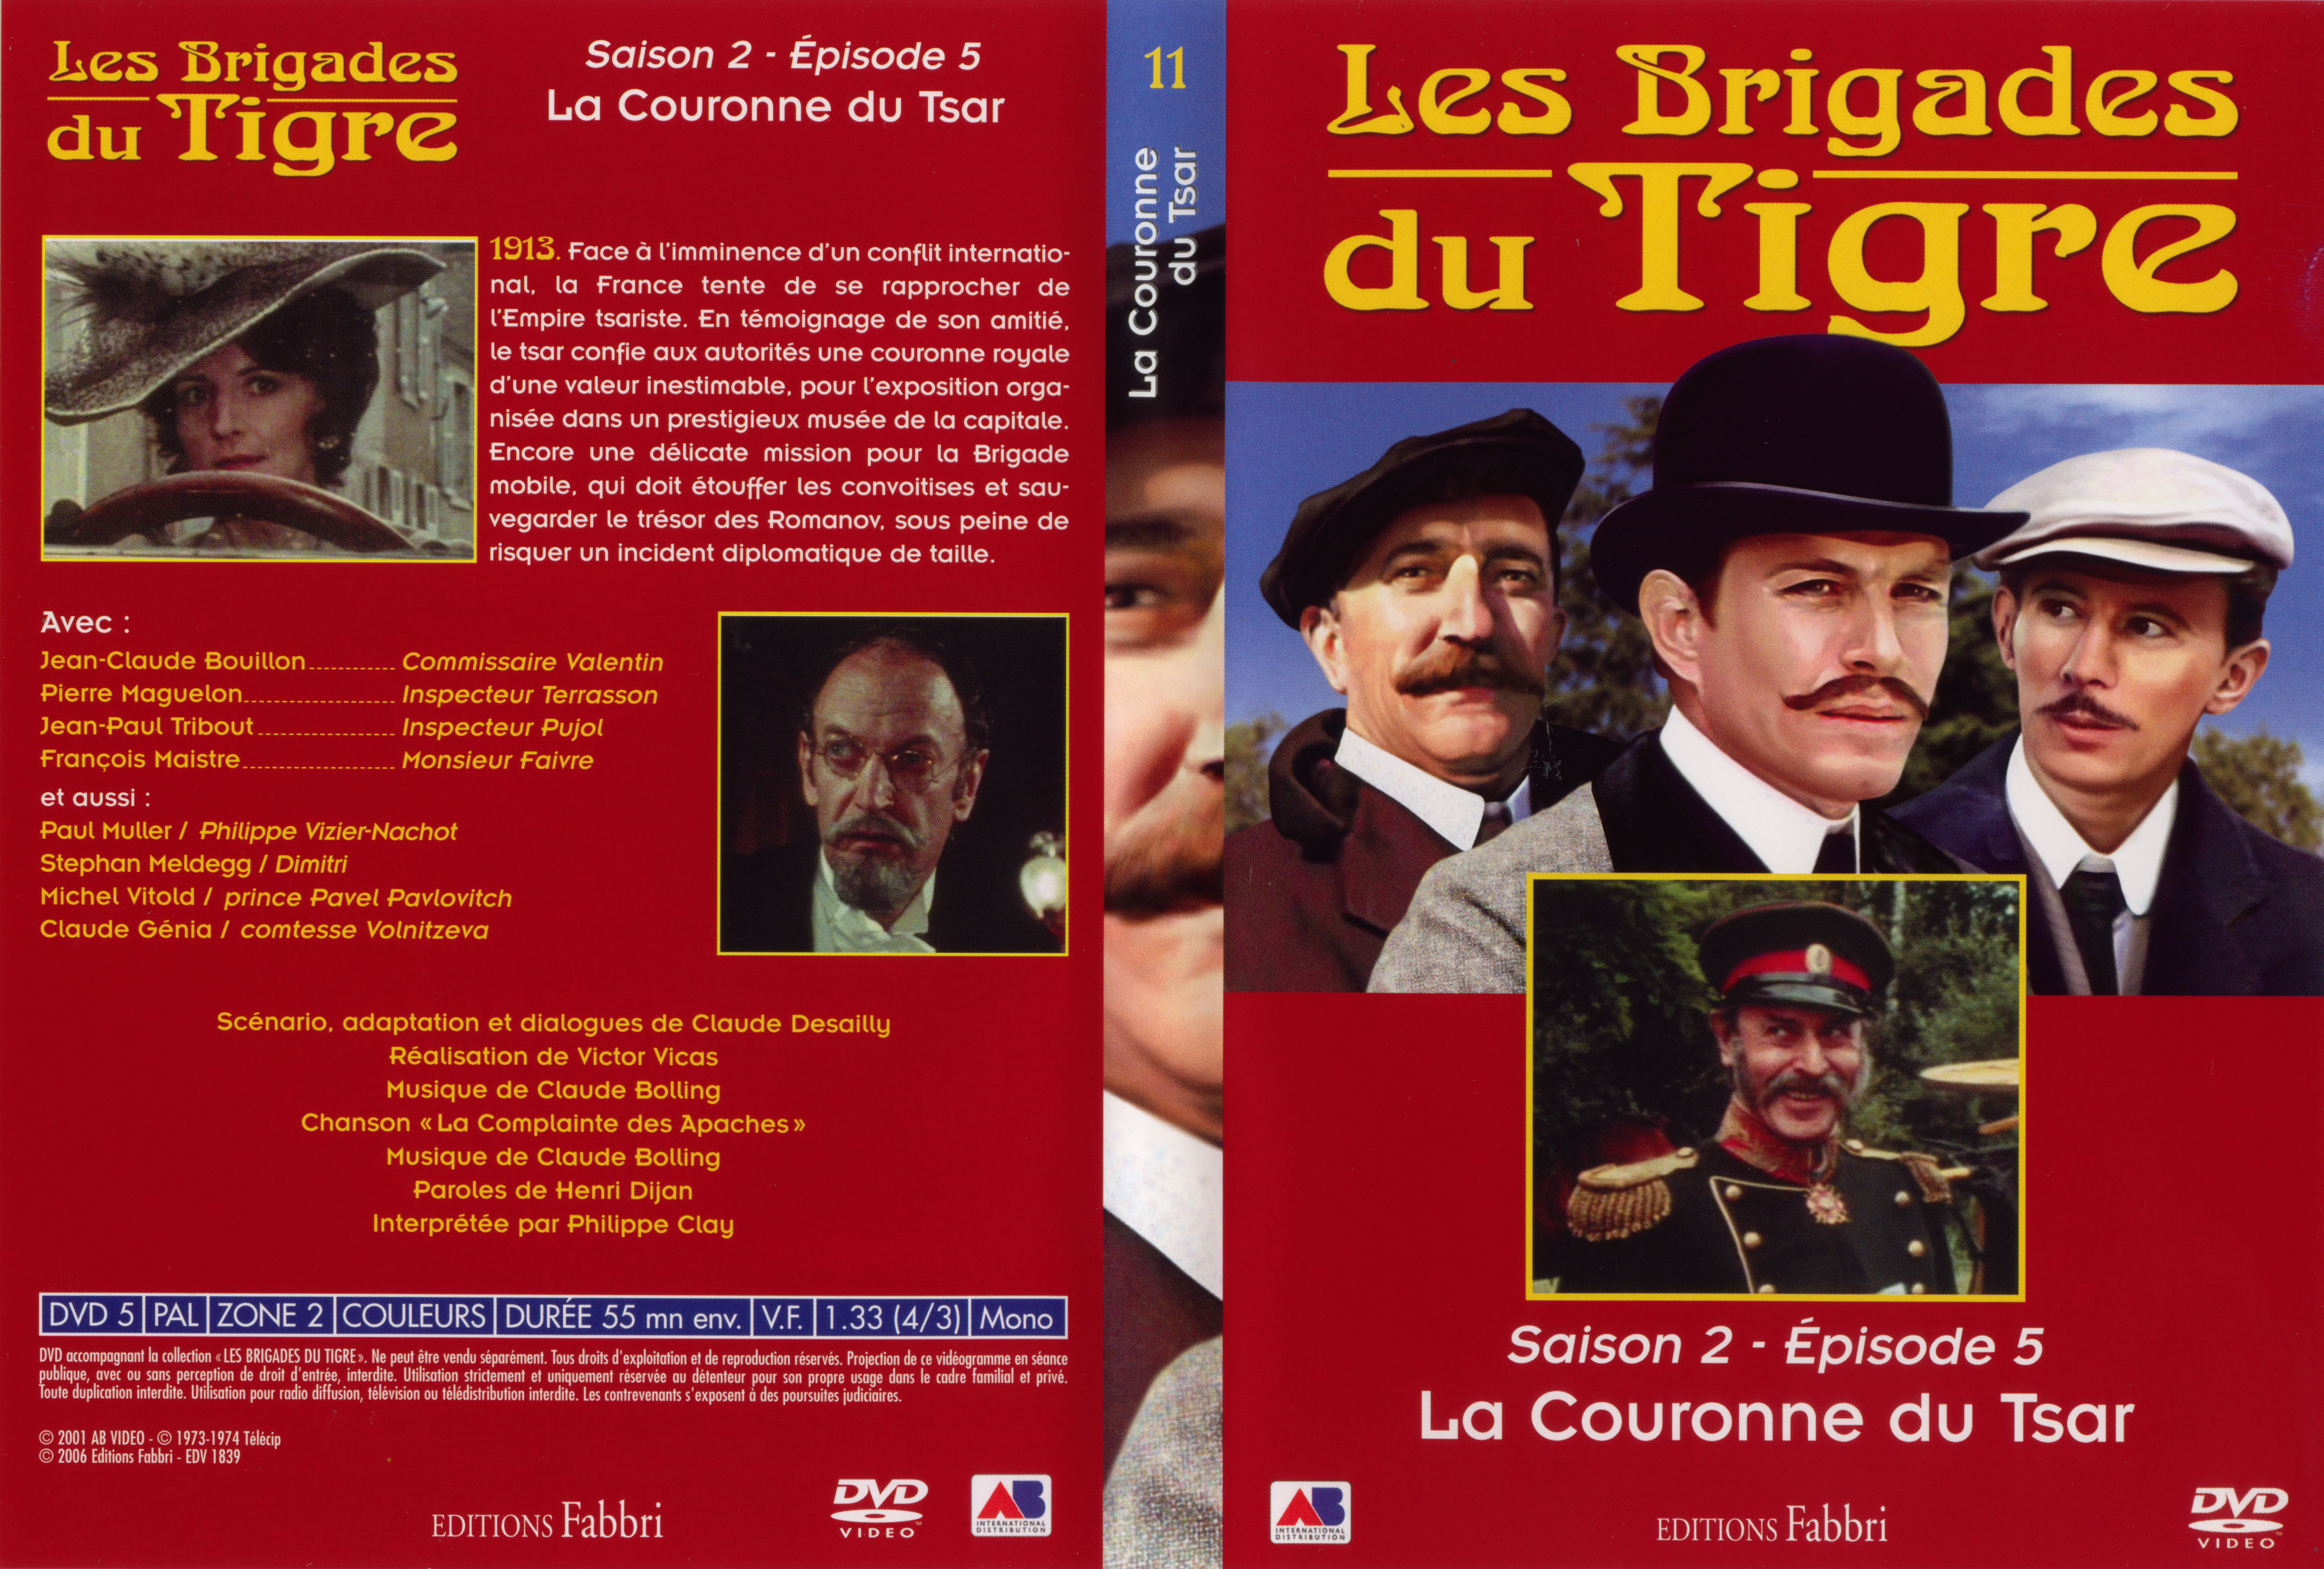 Jaquette DVD Les brigades du tigre saison 2 pisode 5